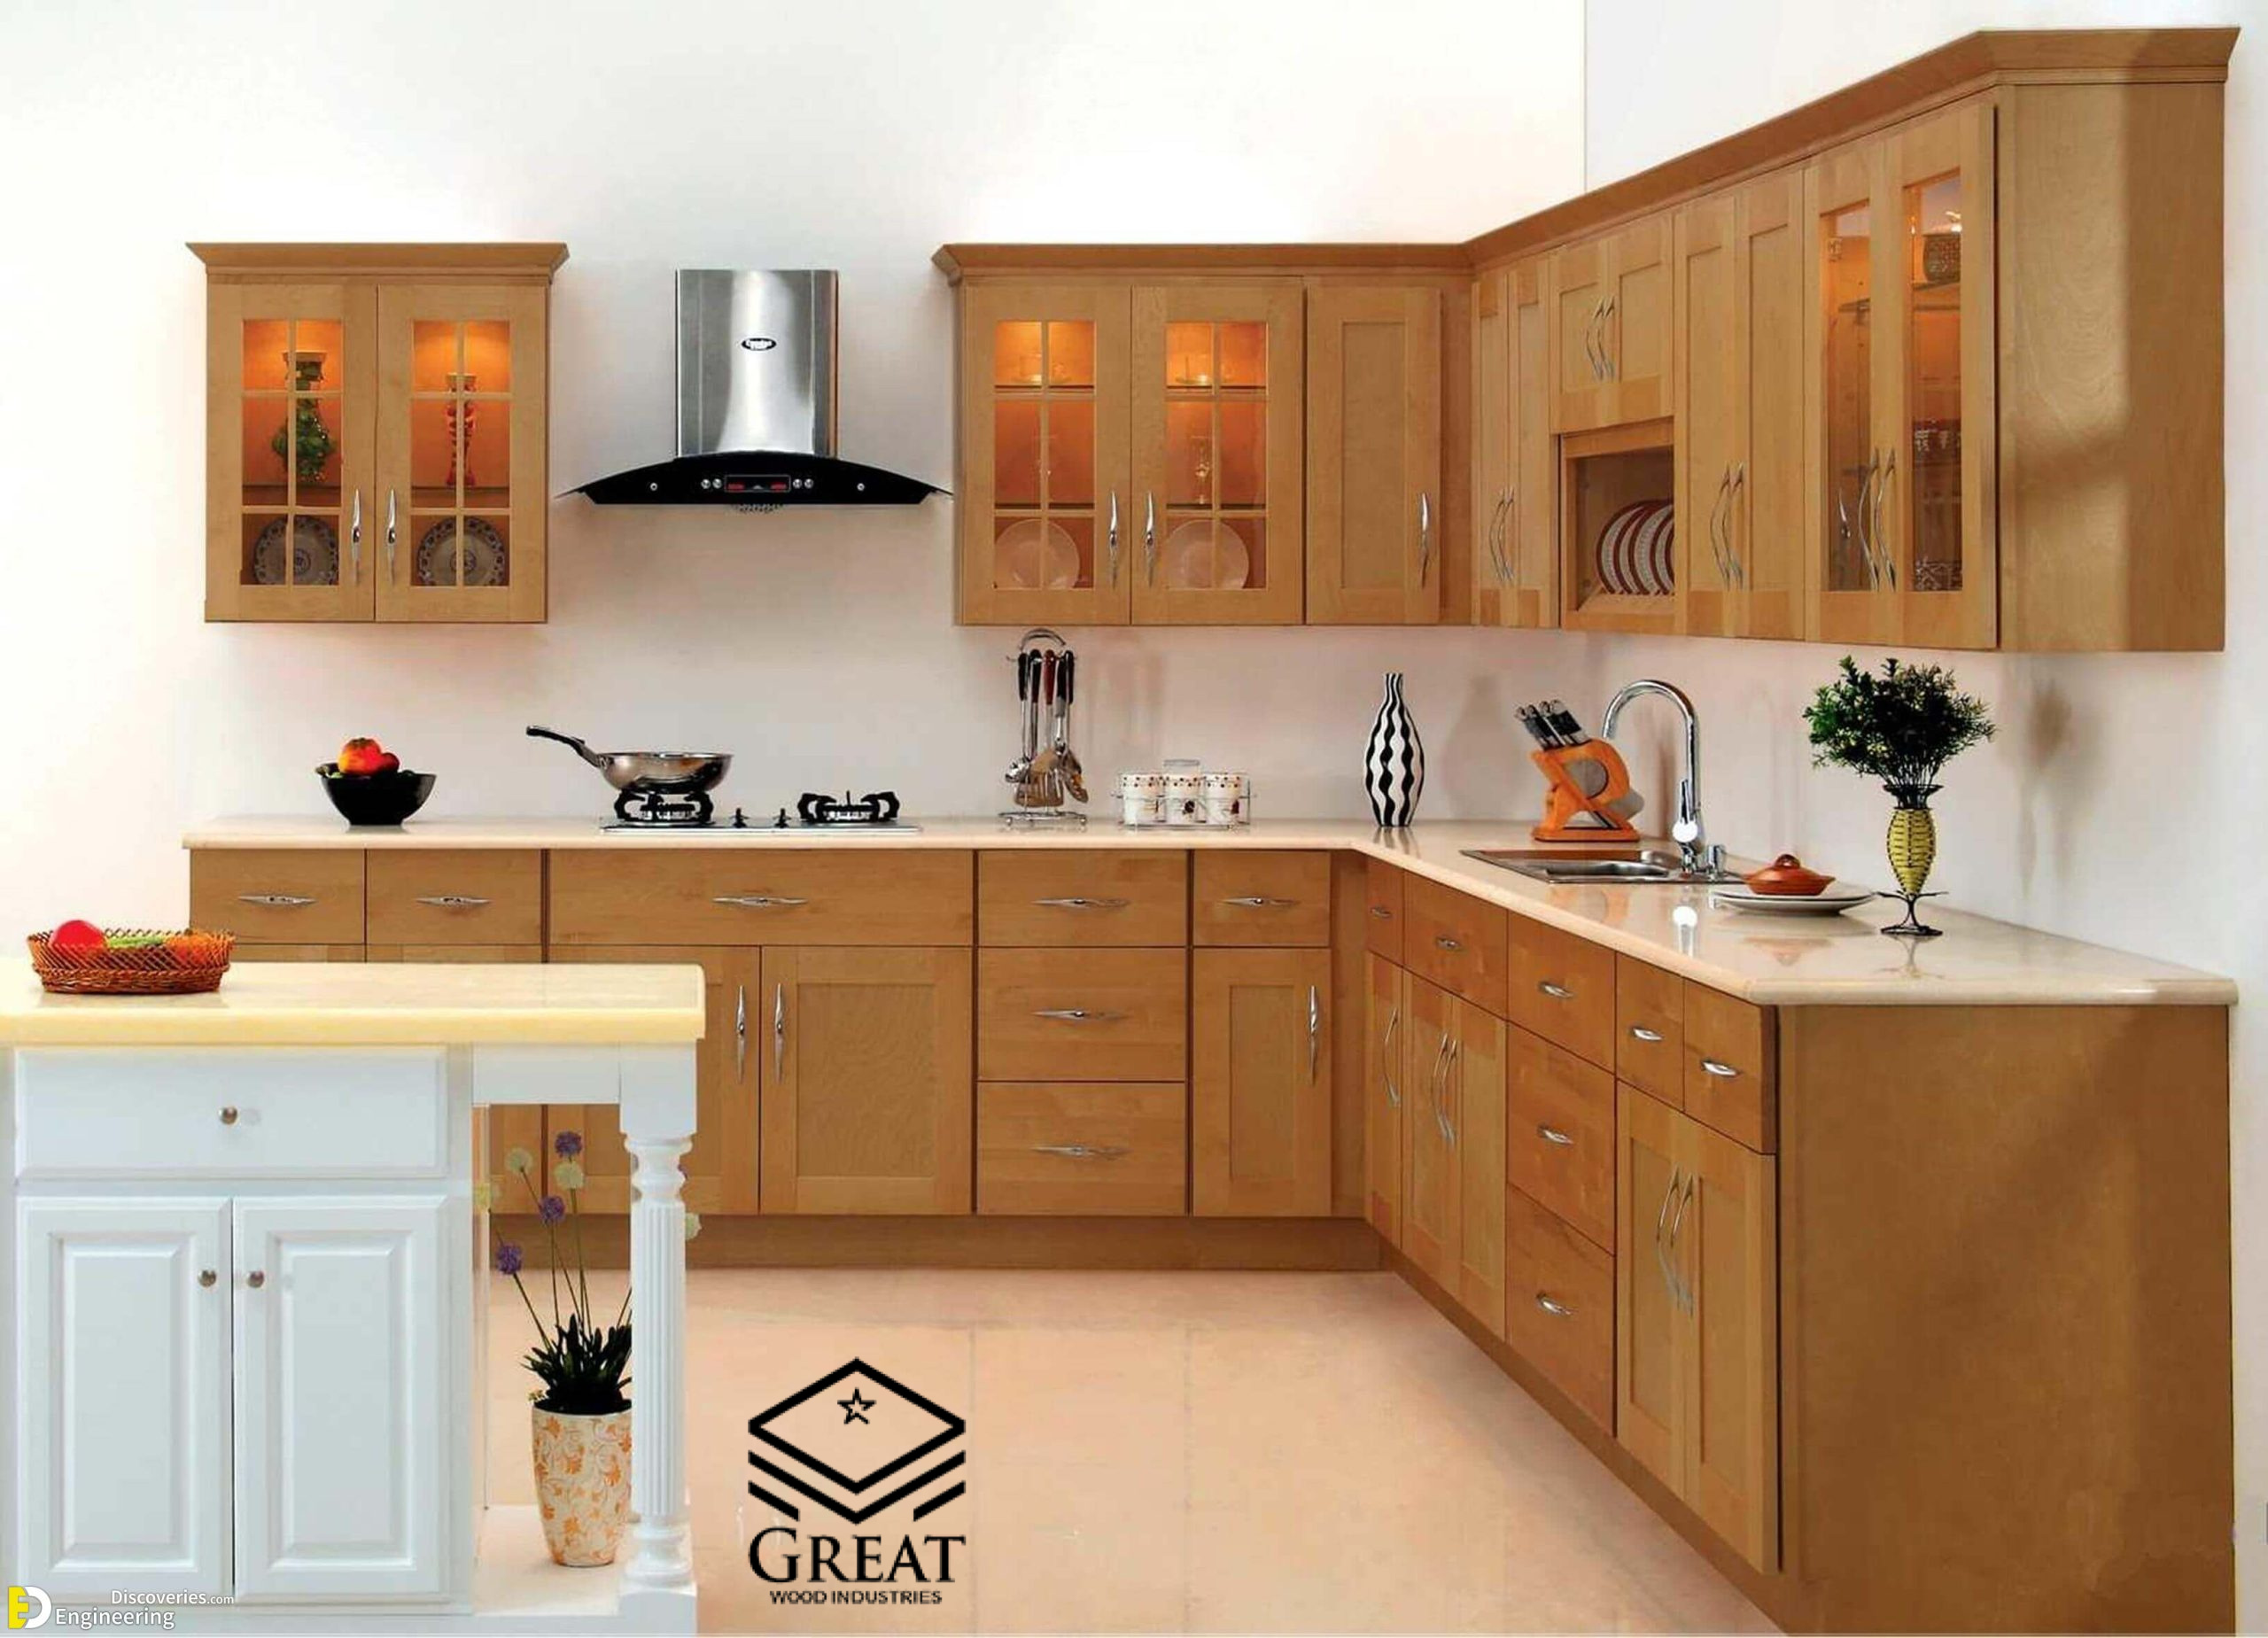 گریت کابینت | شرکت کابینت آشپزخانه گریت | kitchen cabinet design layout pictures including outstanding designer center 2018 1.jpg 1 scaled 1